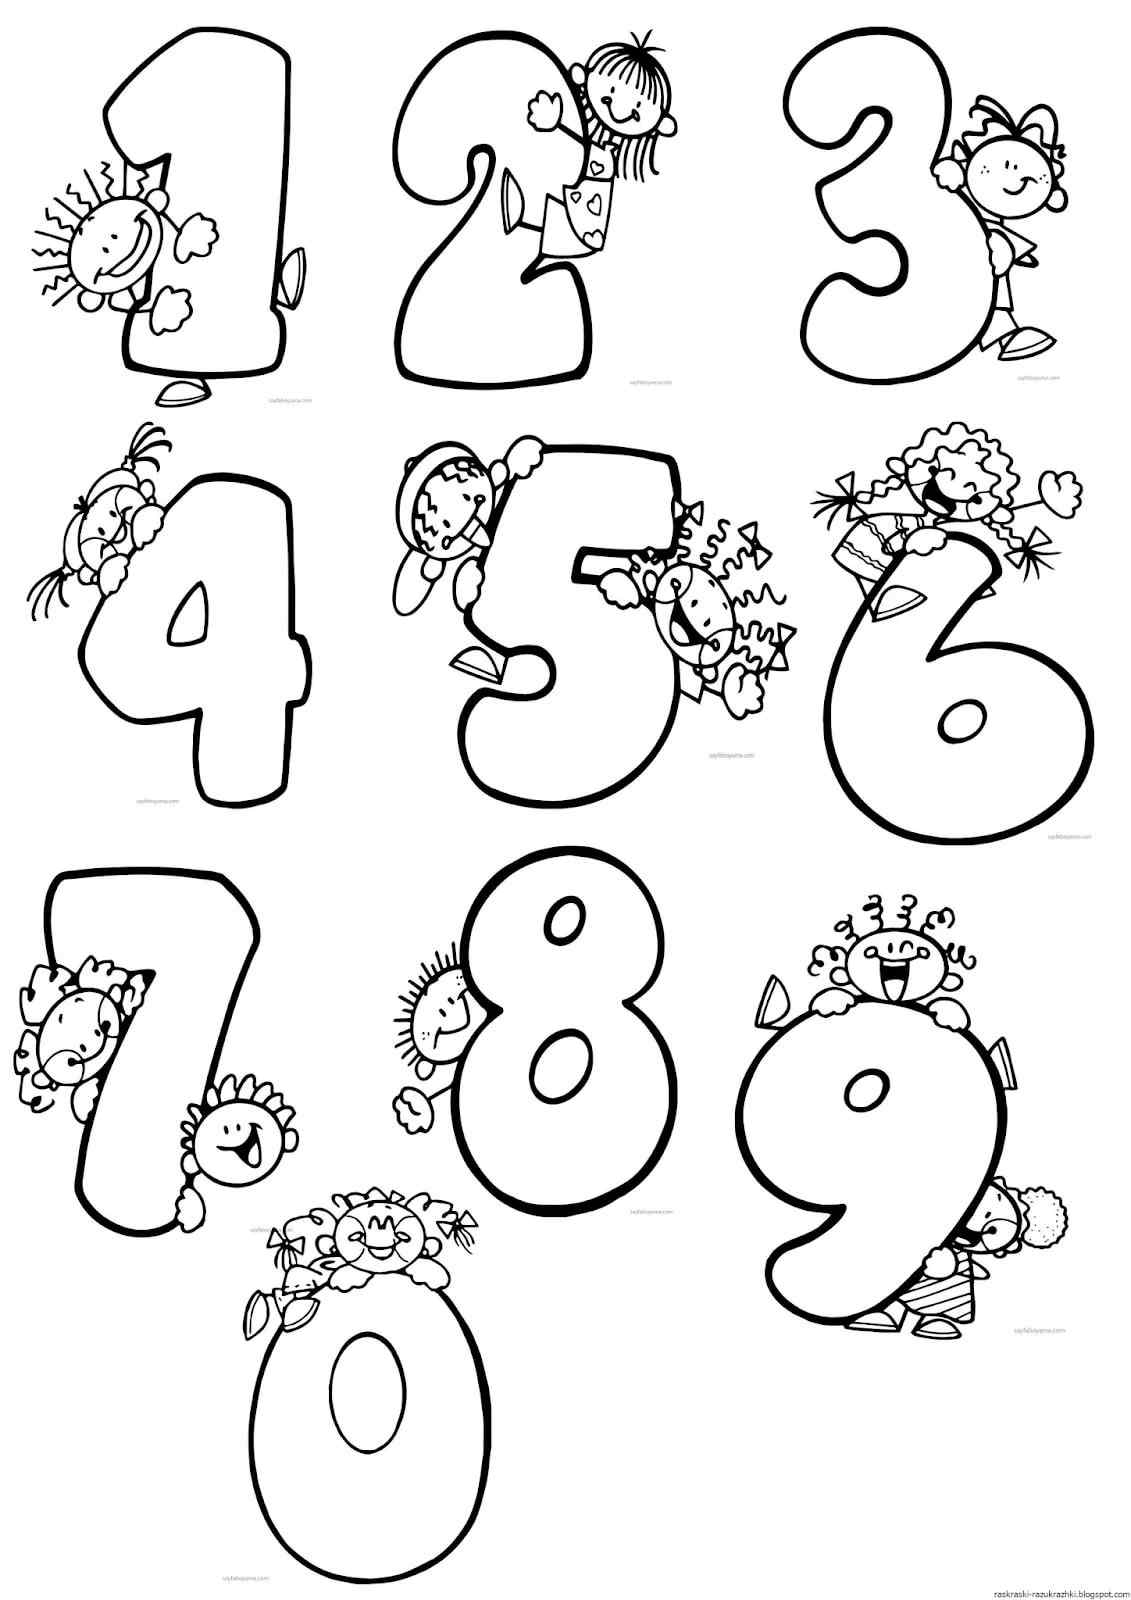 Прикольные рисунки цифр для детей 19